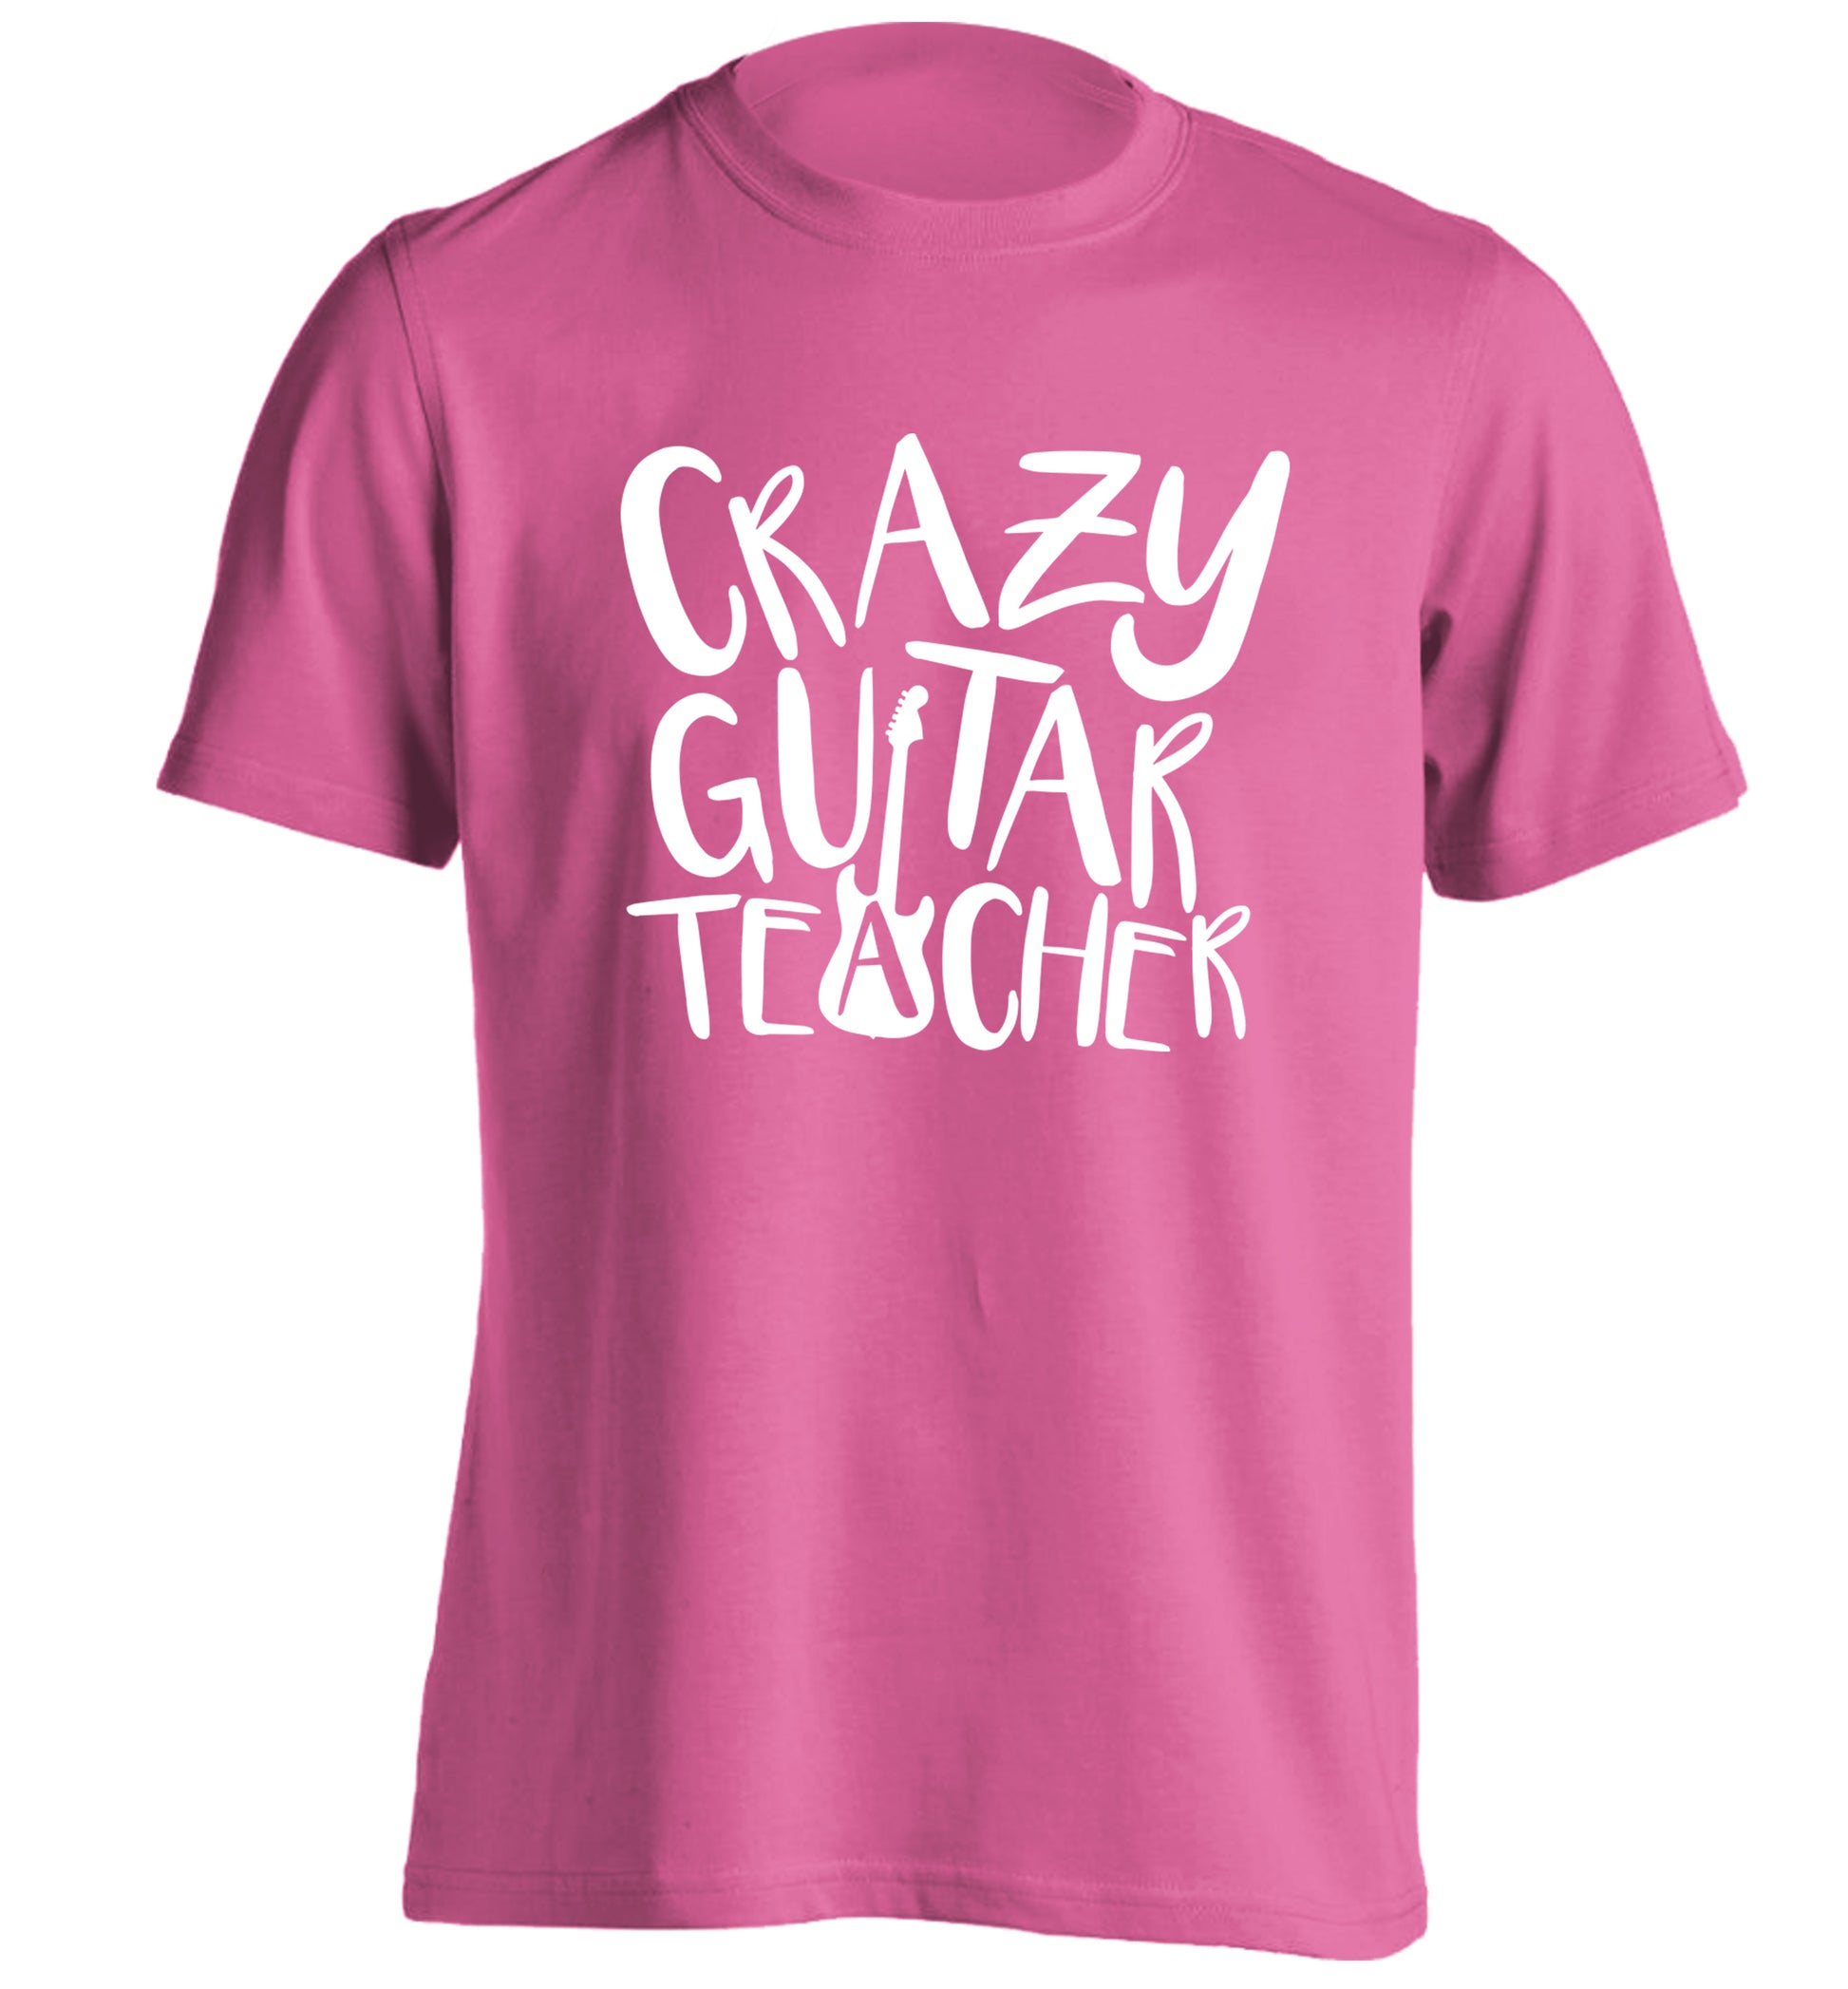 Crazy guitar teacher adults unisex pink Tshirt 2XL